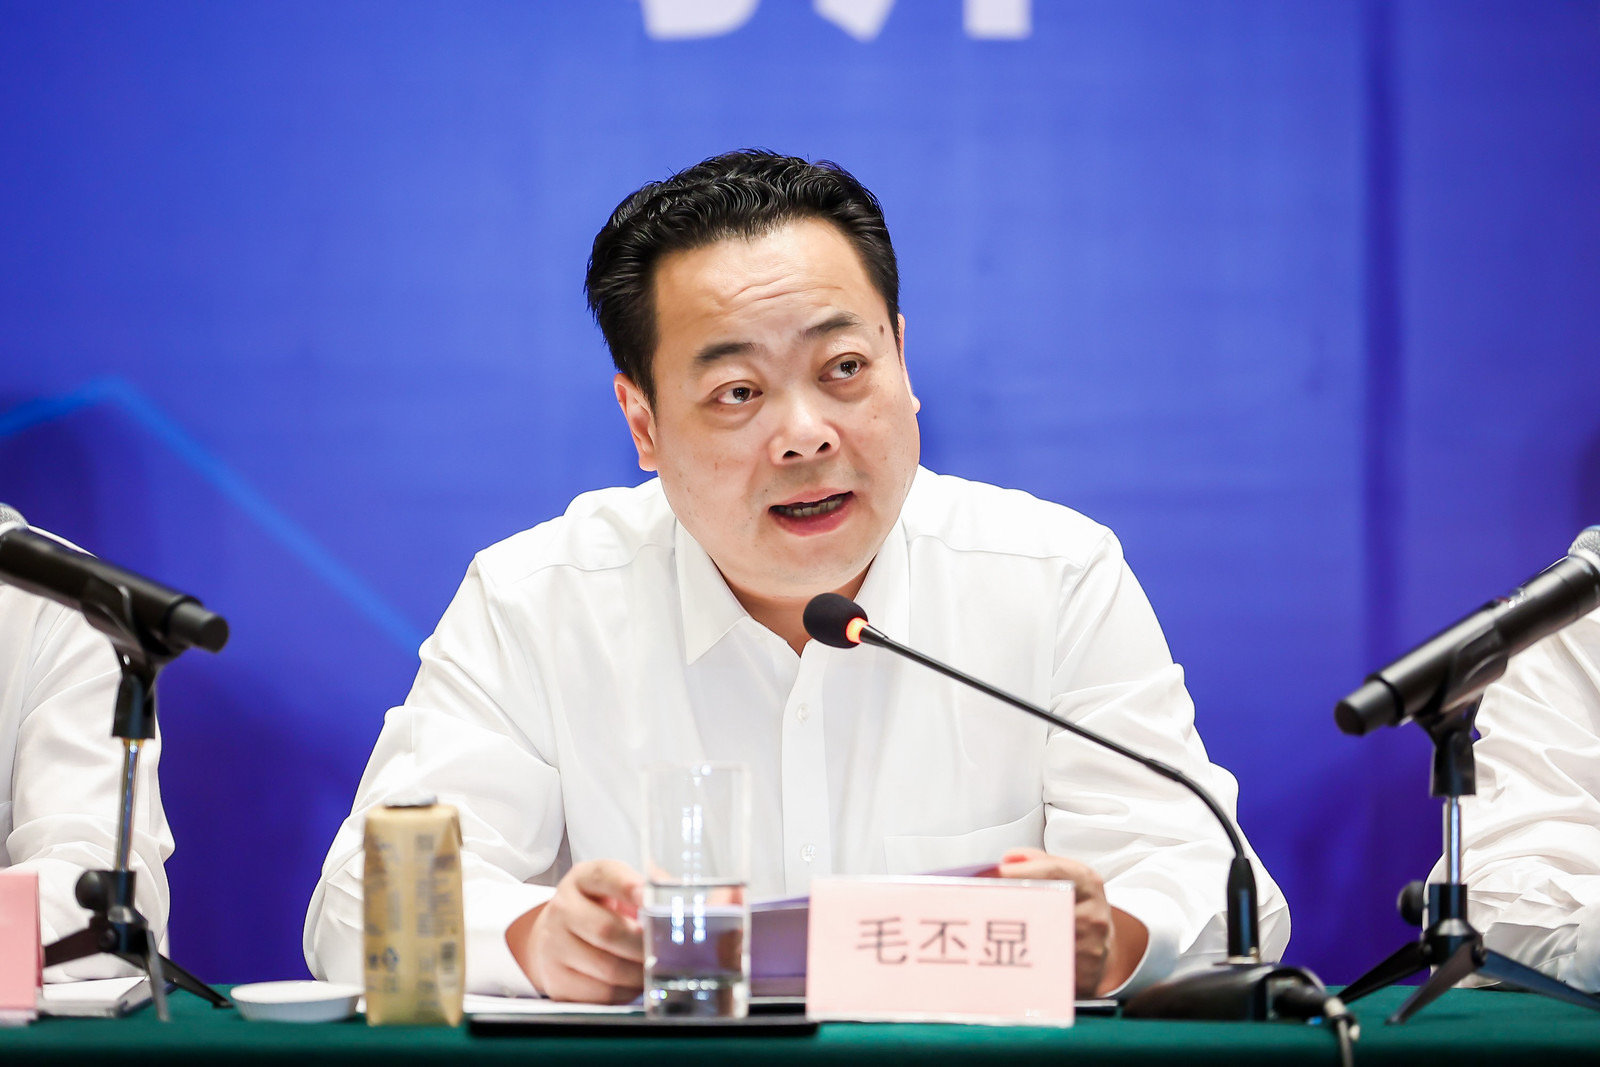 第八届中国机器人峰会暨智能经济人才峰会将于5月23日在浙江余姚举行